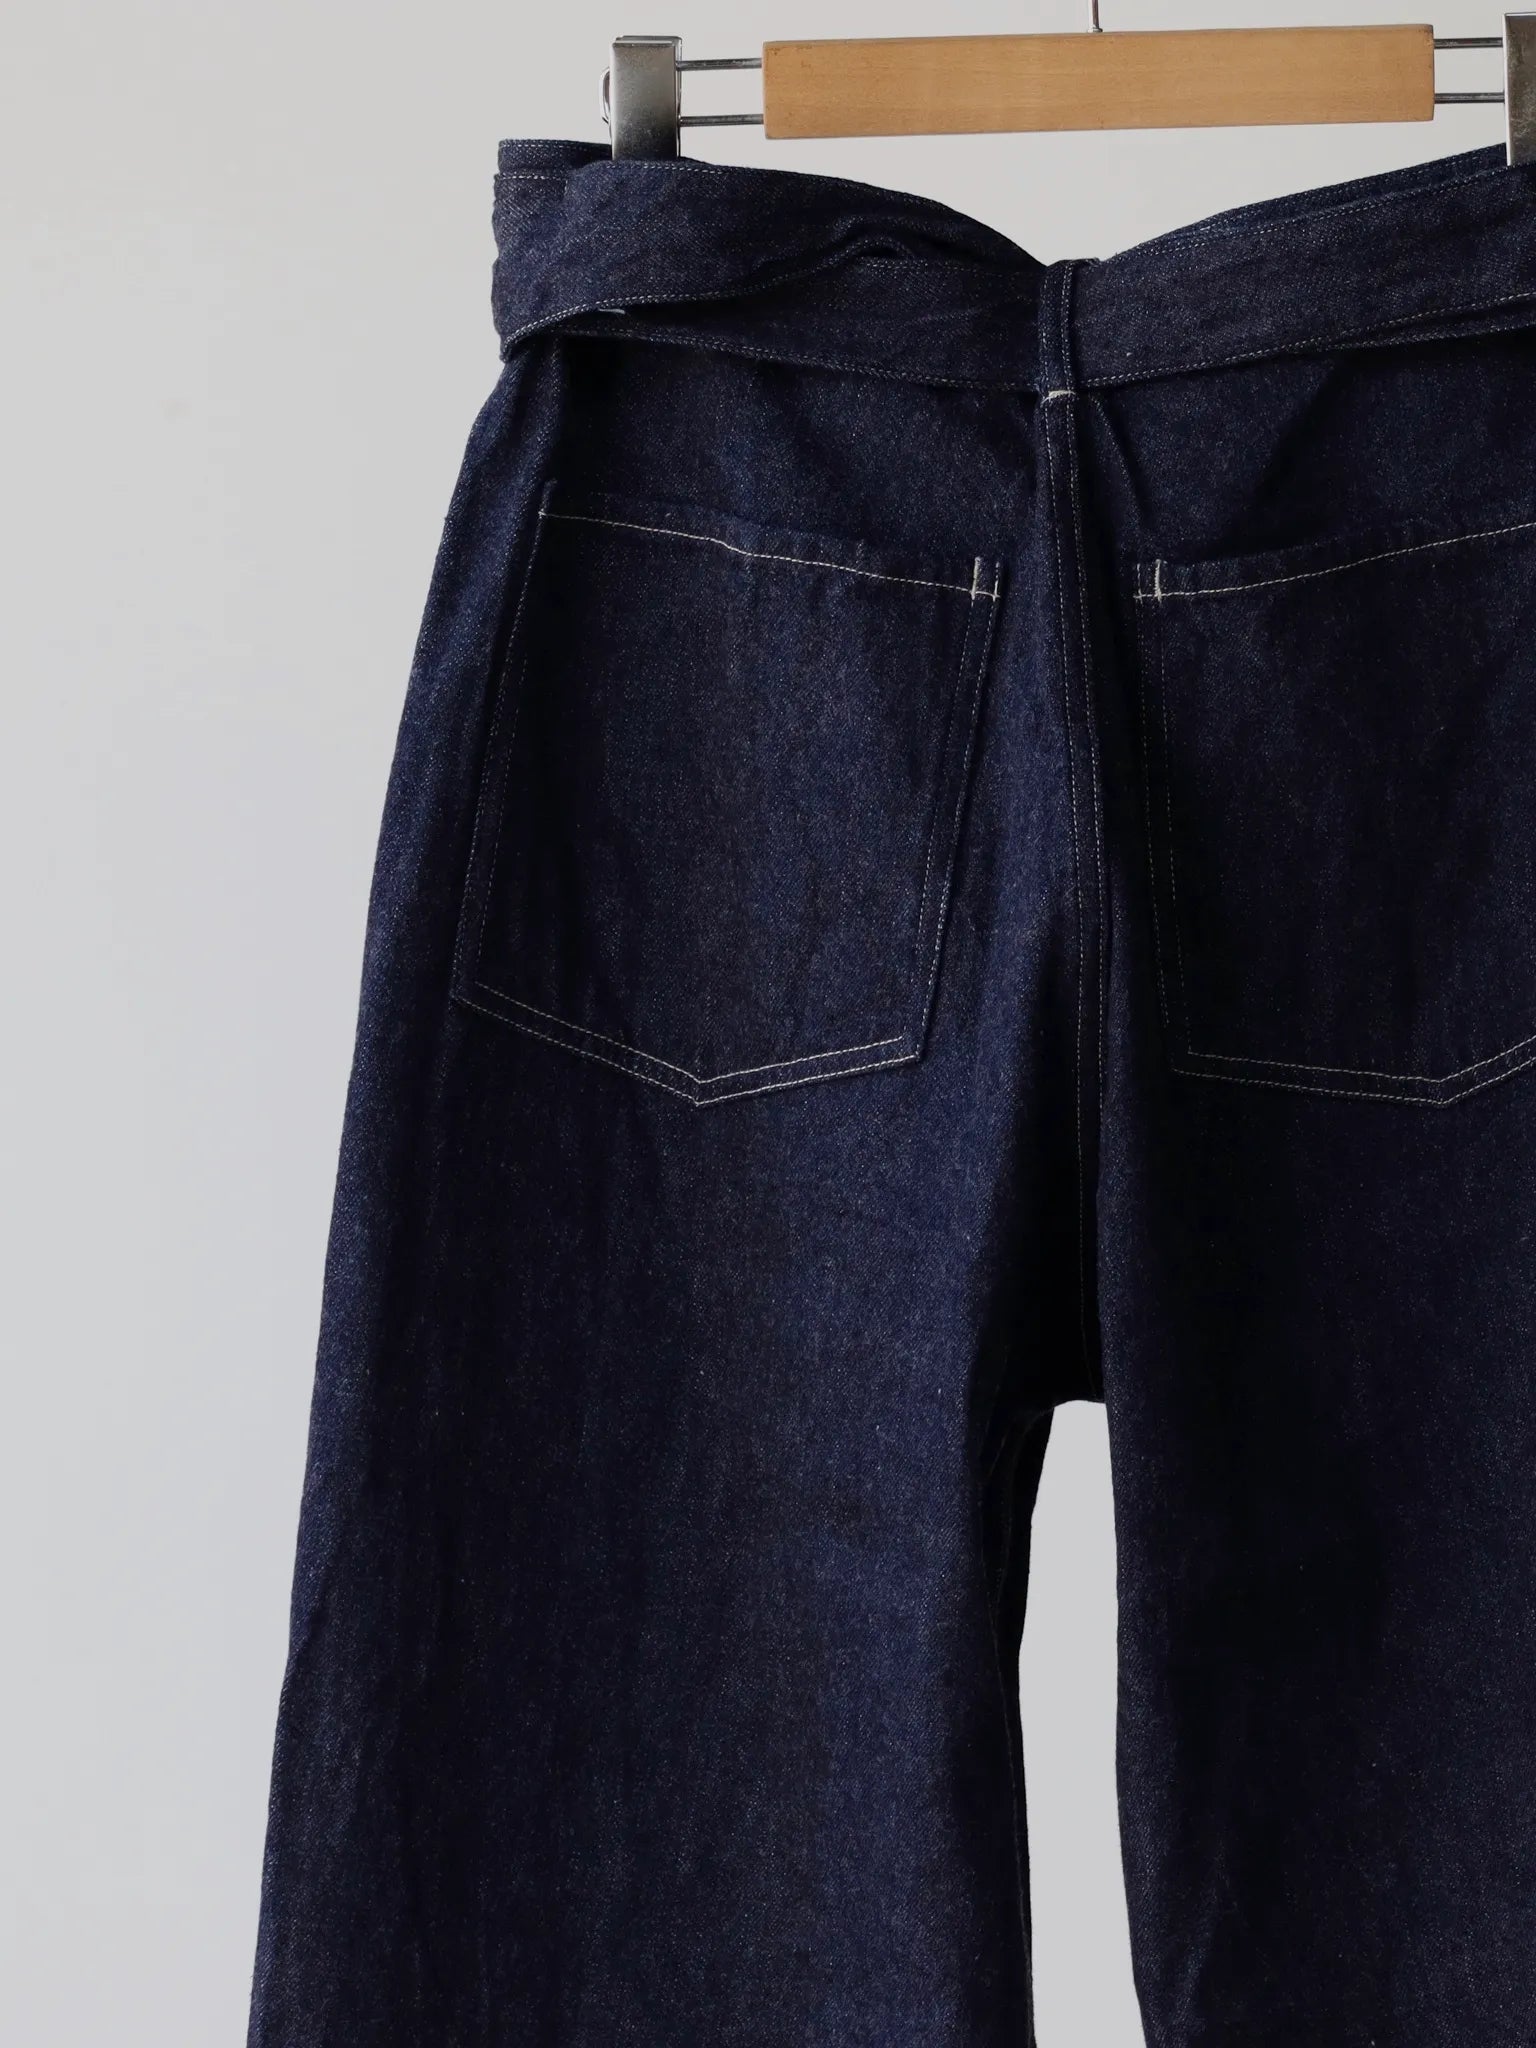 COMOLI | Denim Belted Pants NAVY